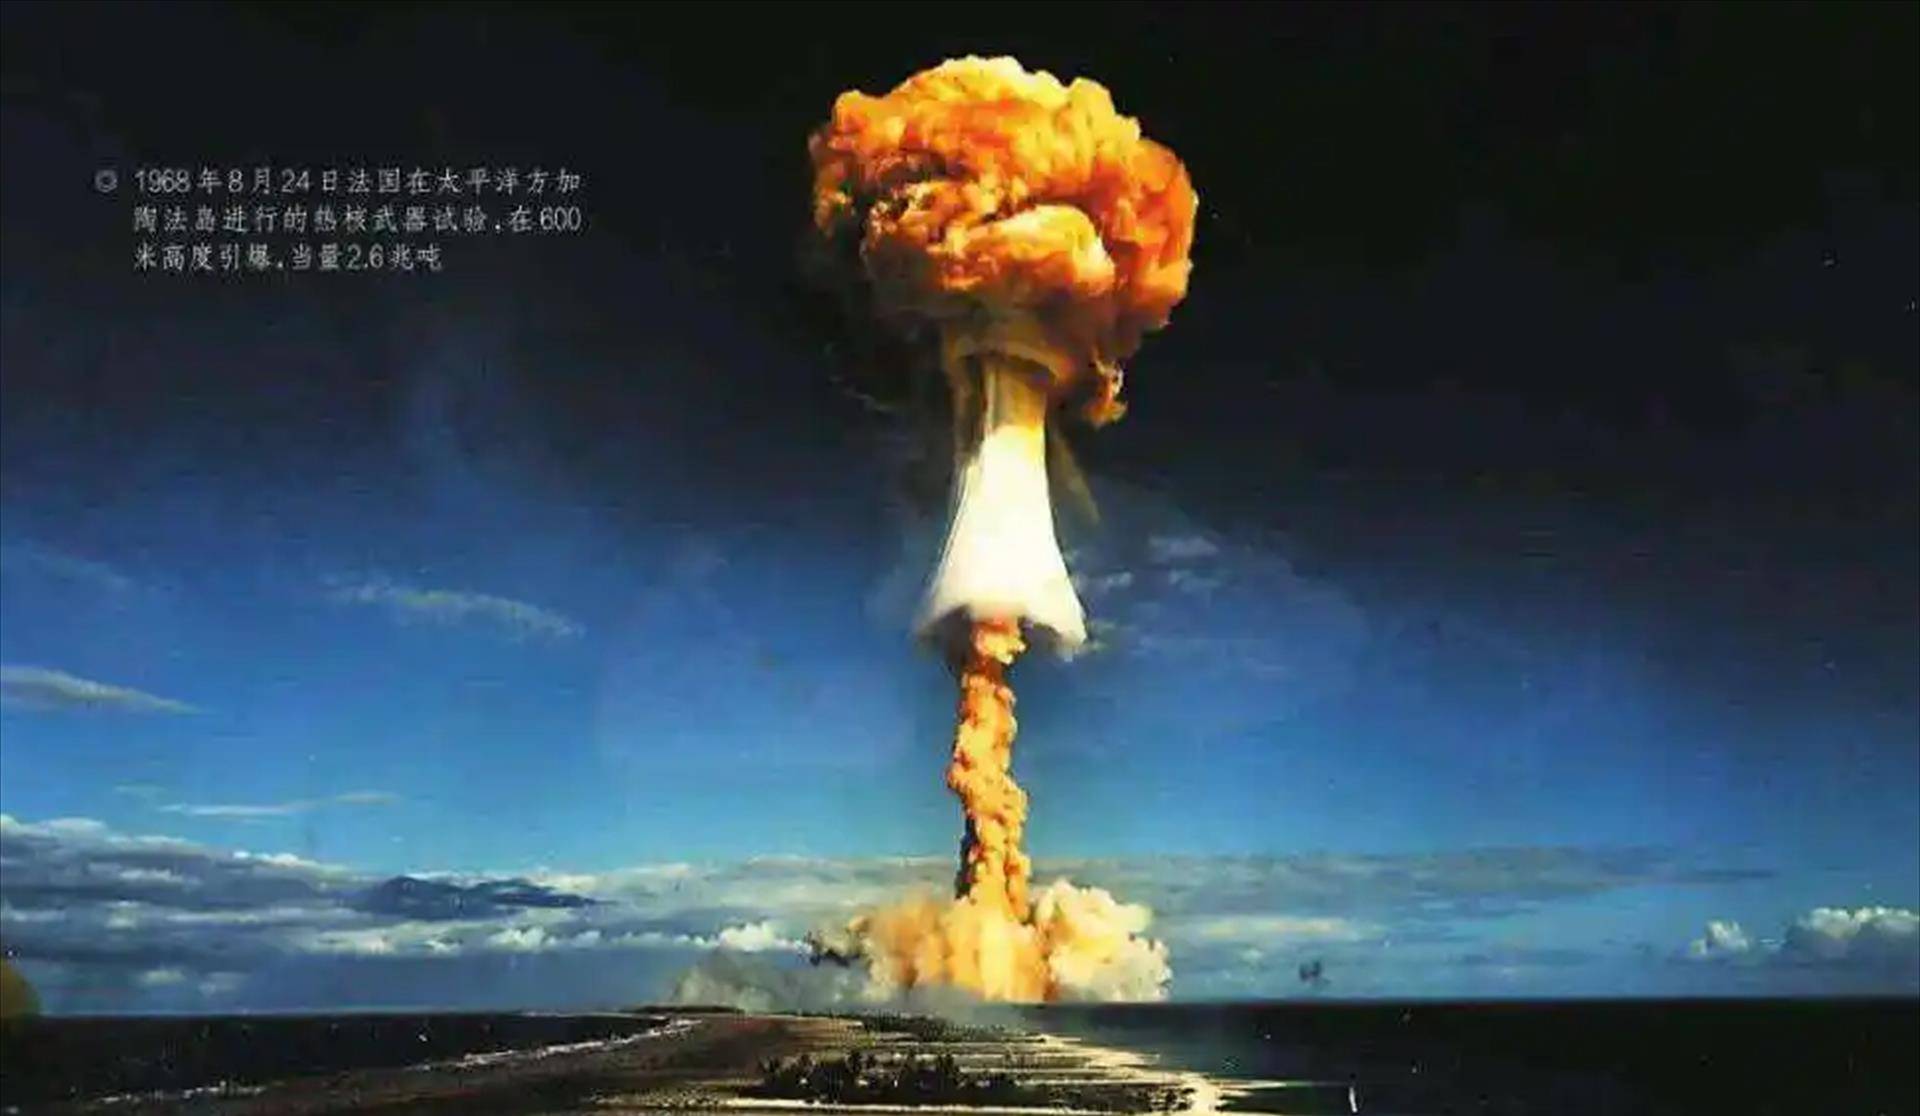 原创1967年中国第一颗氢弹试爆成功消息一经传出各国反应耐人寻味